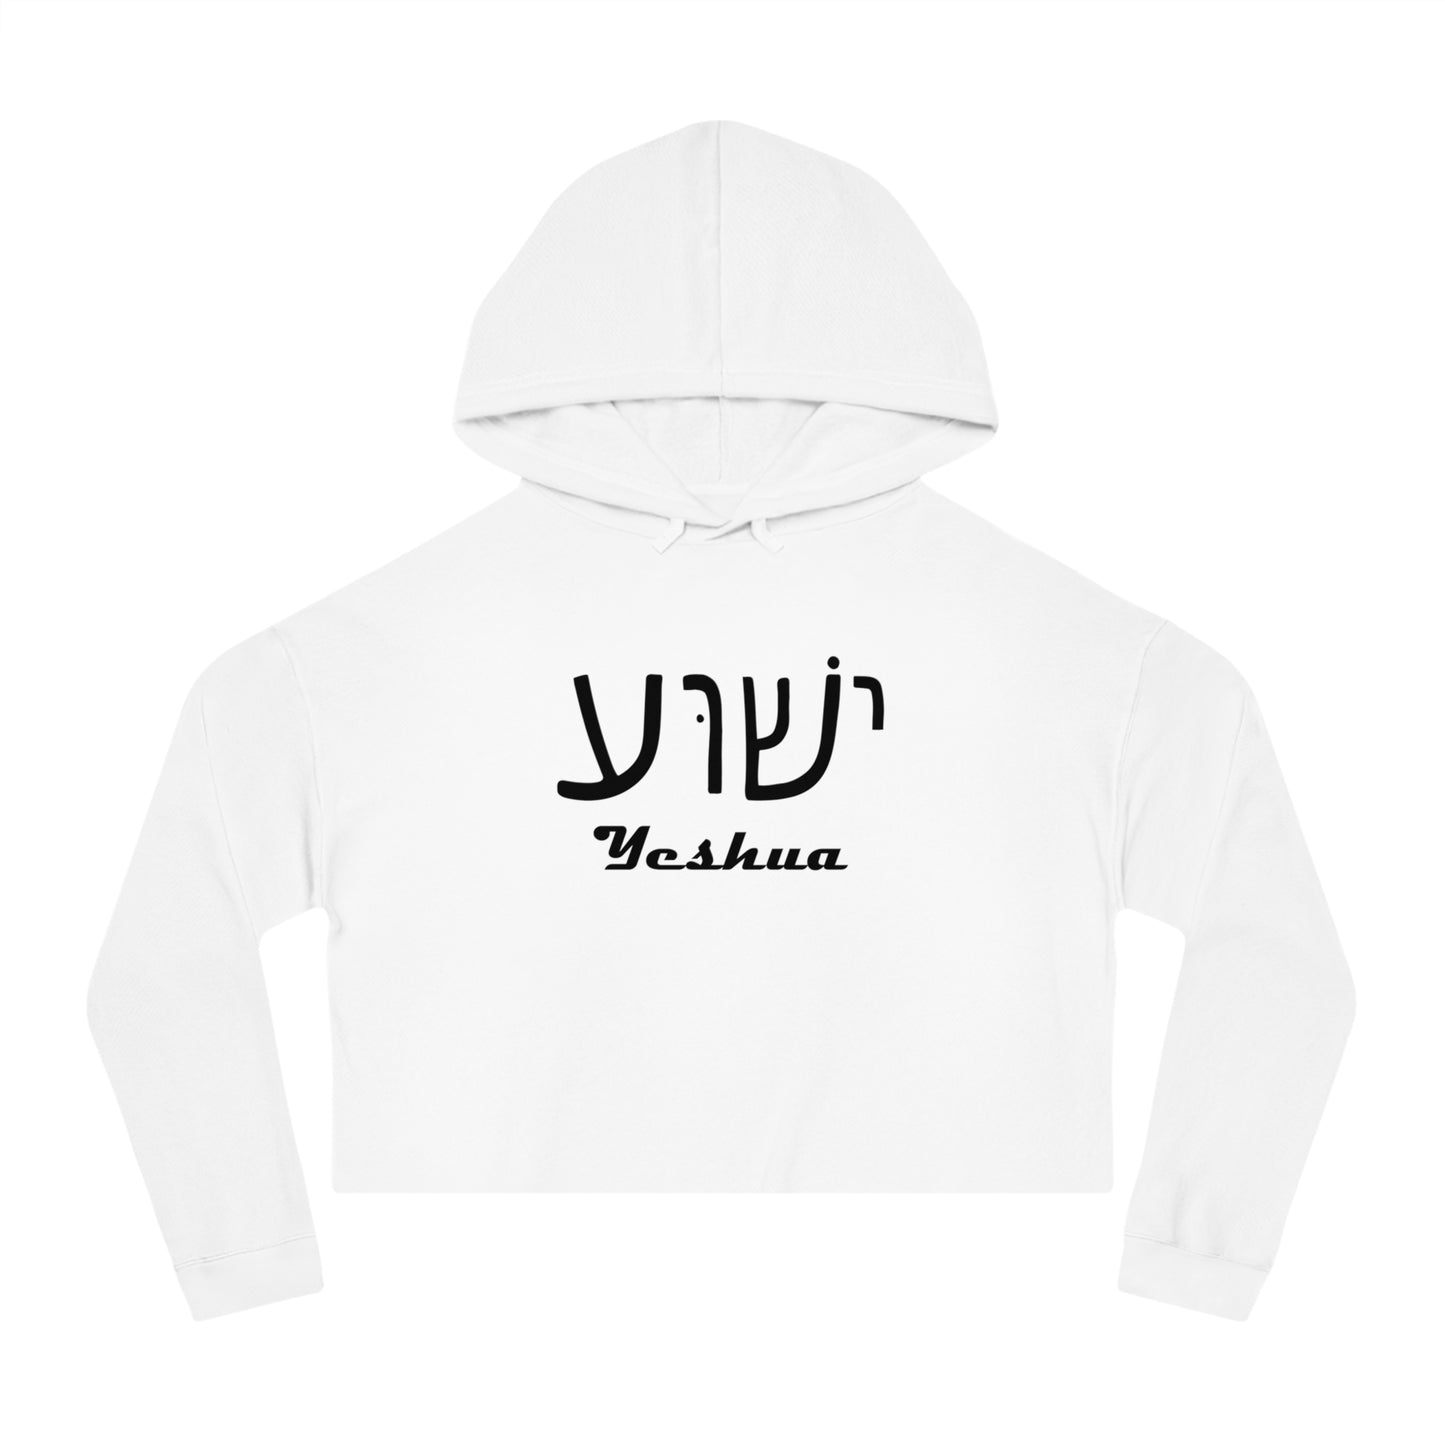 Yeshua Hooded Sweatshirt Women’s 3